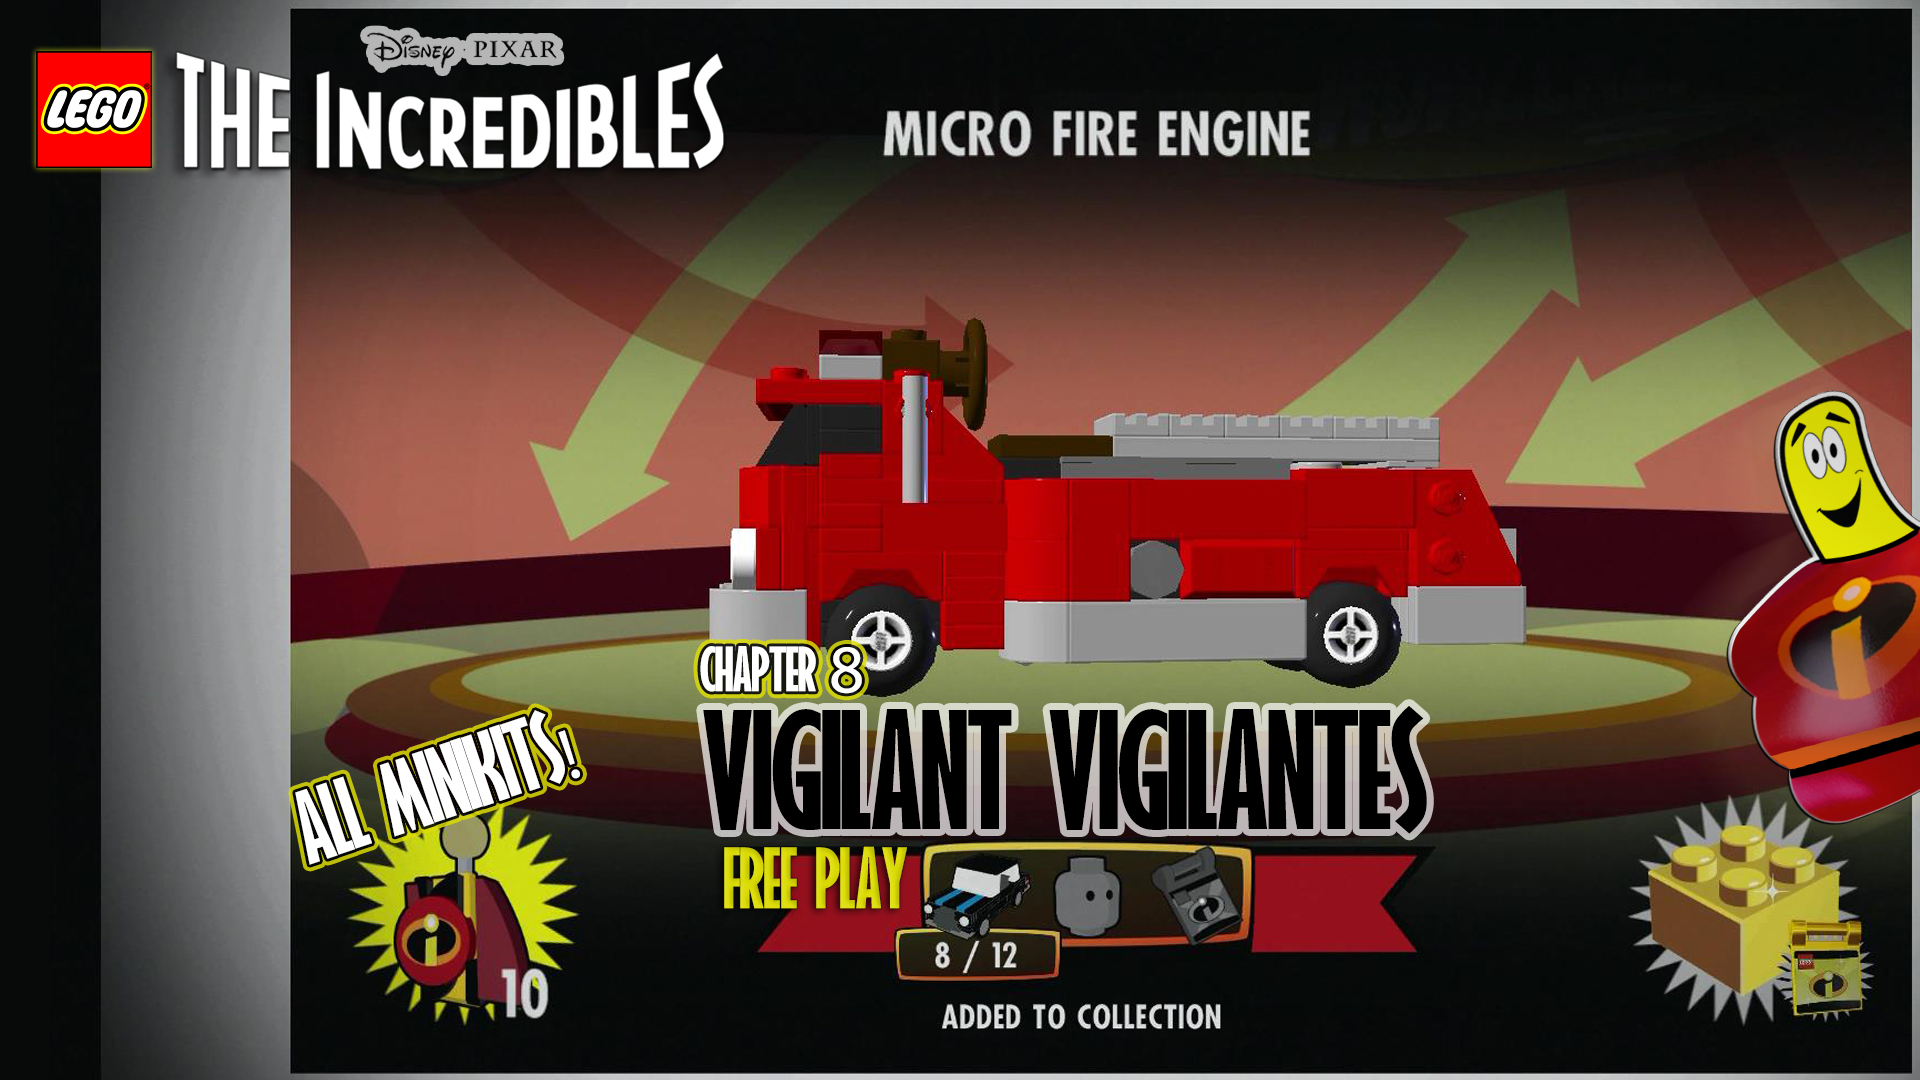 Lego The Incredibles: Vigilant Vigilantes FREE PLAY (All 10 Minikits) – HTG